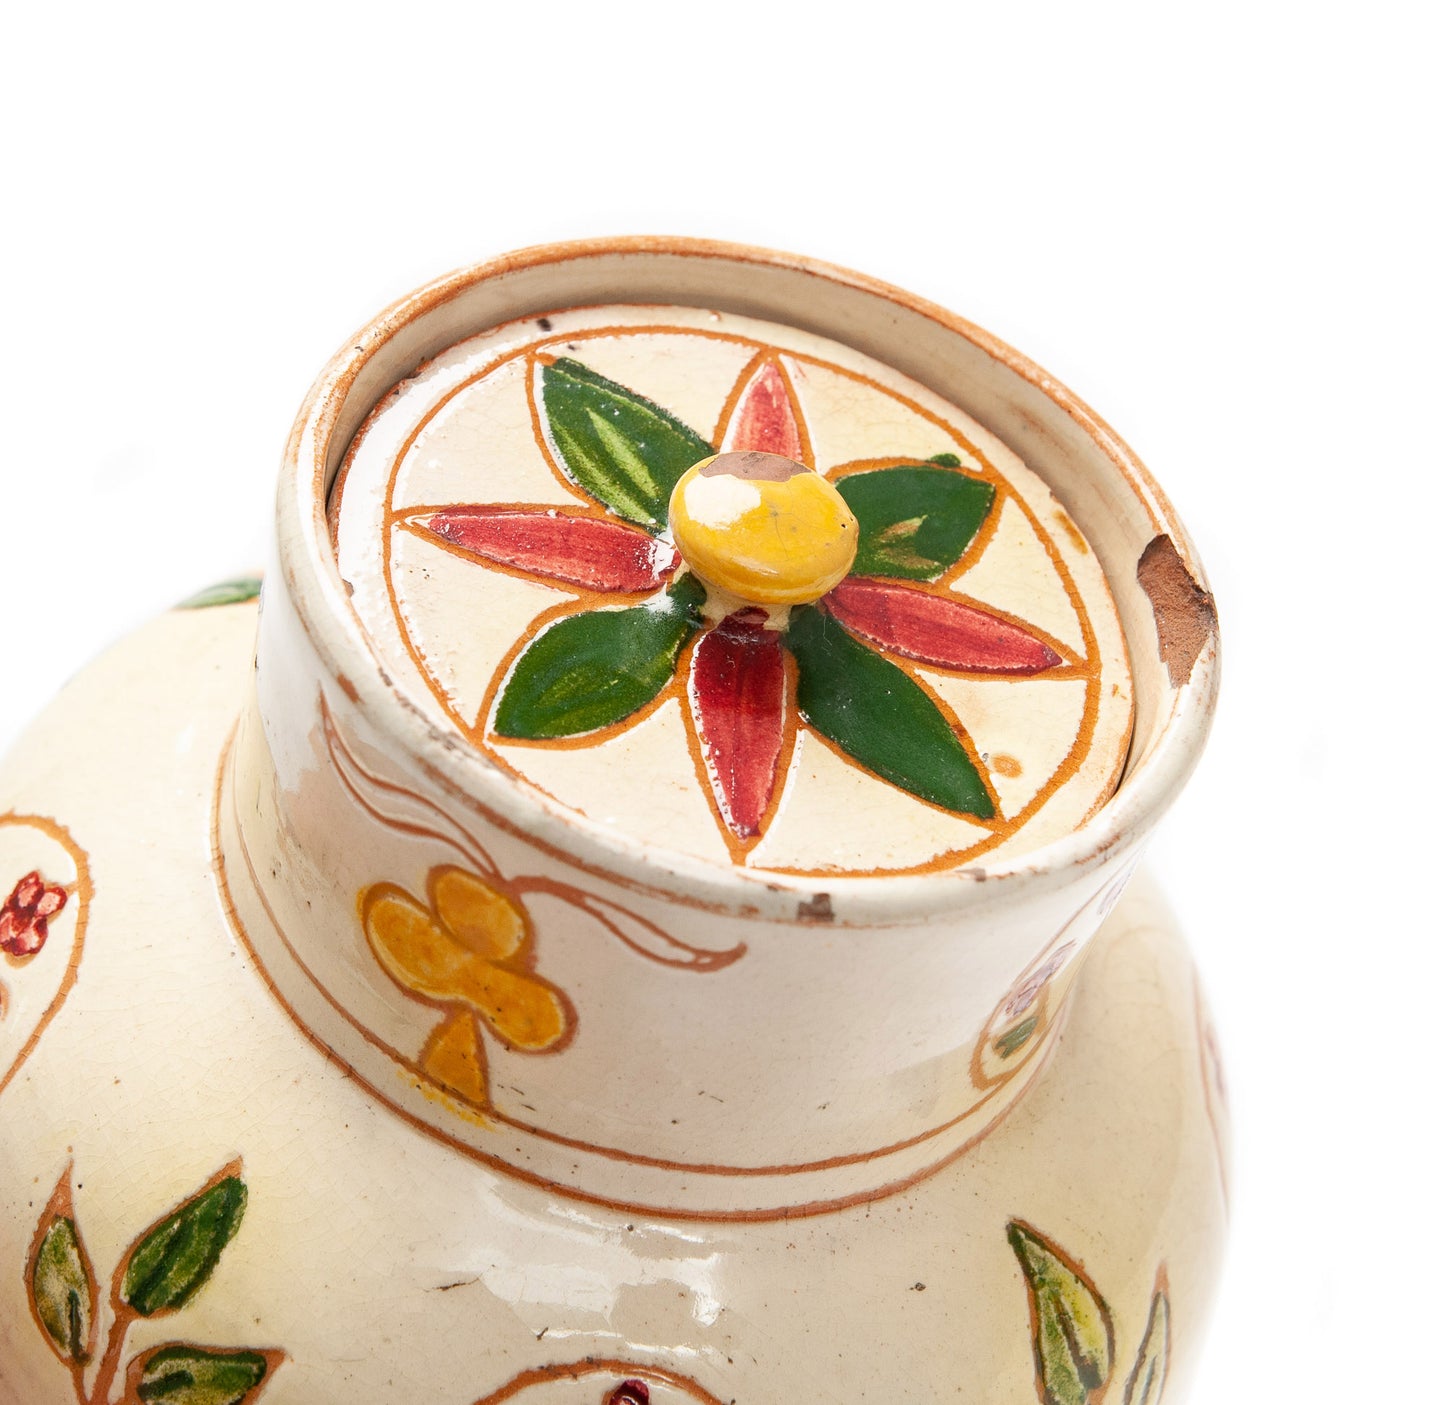 Antique Della Robbia Birkenhead Arts & Crafts Pottery Pot Pourri Vase / Jar c1900 (Code 2097)